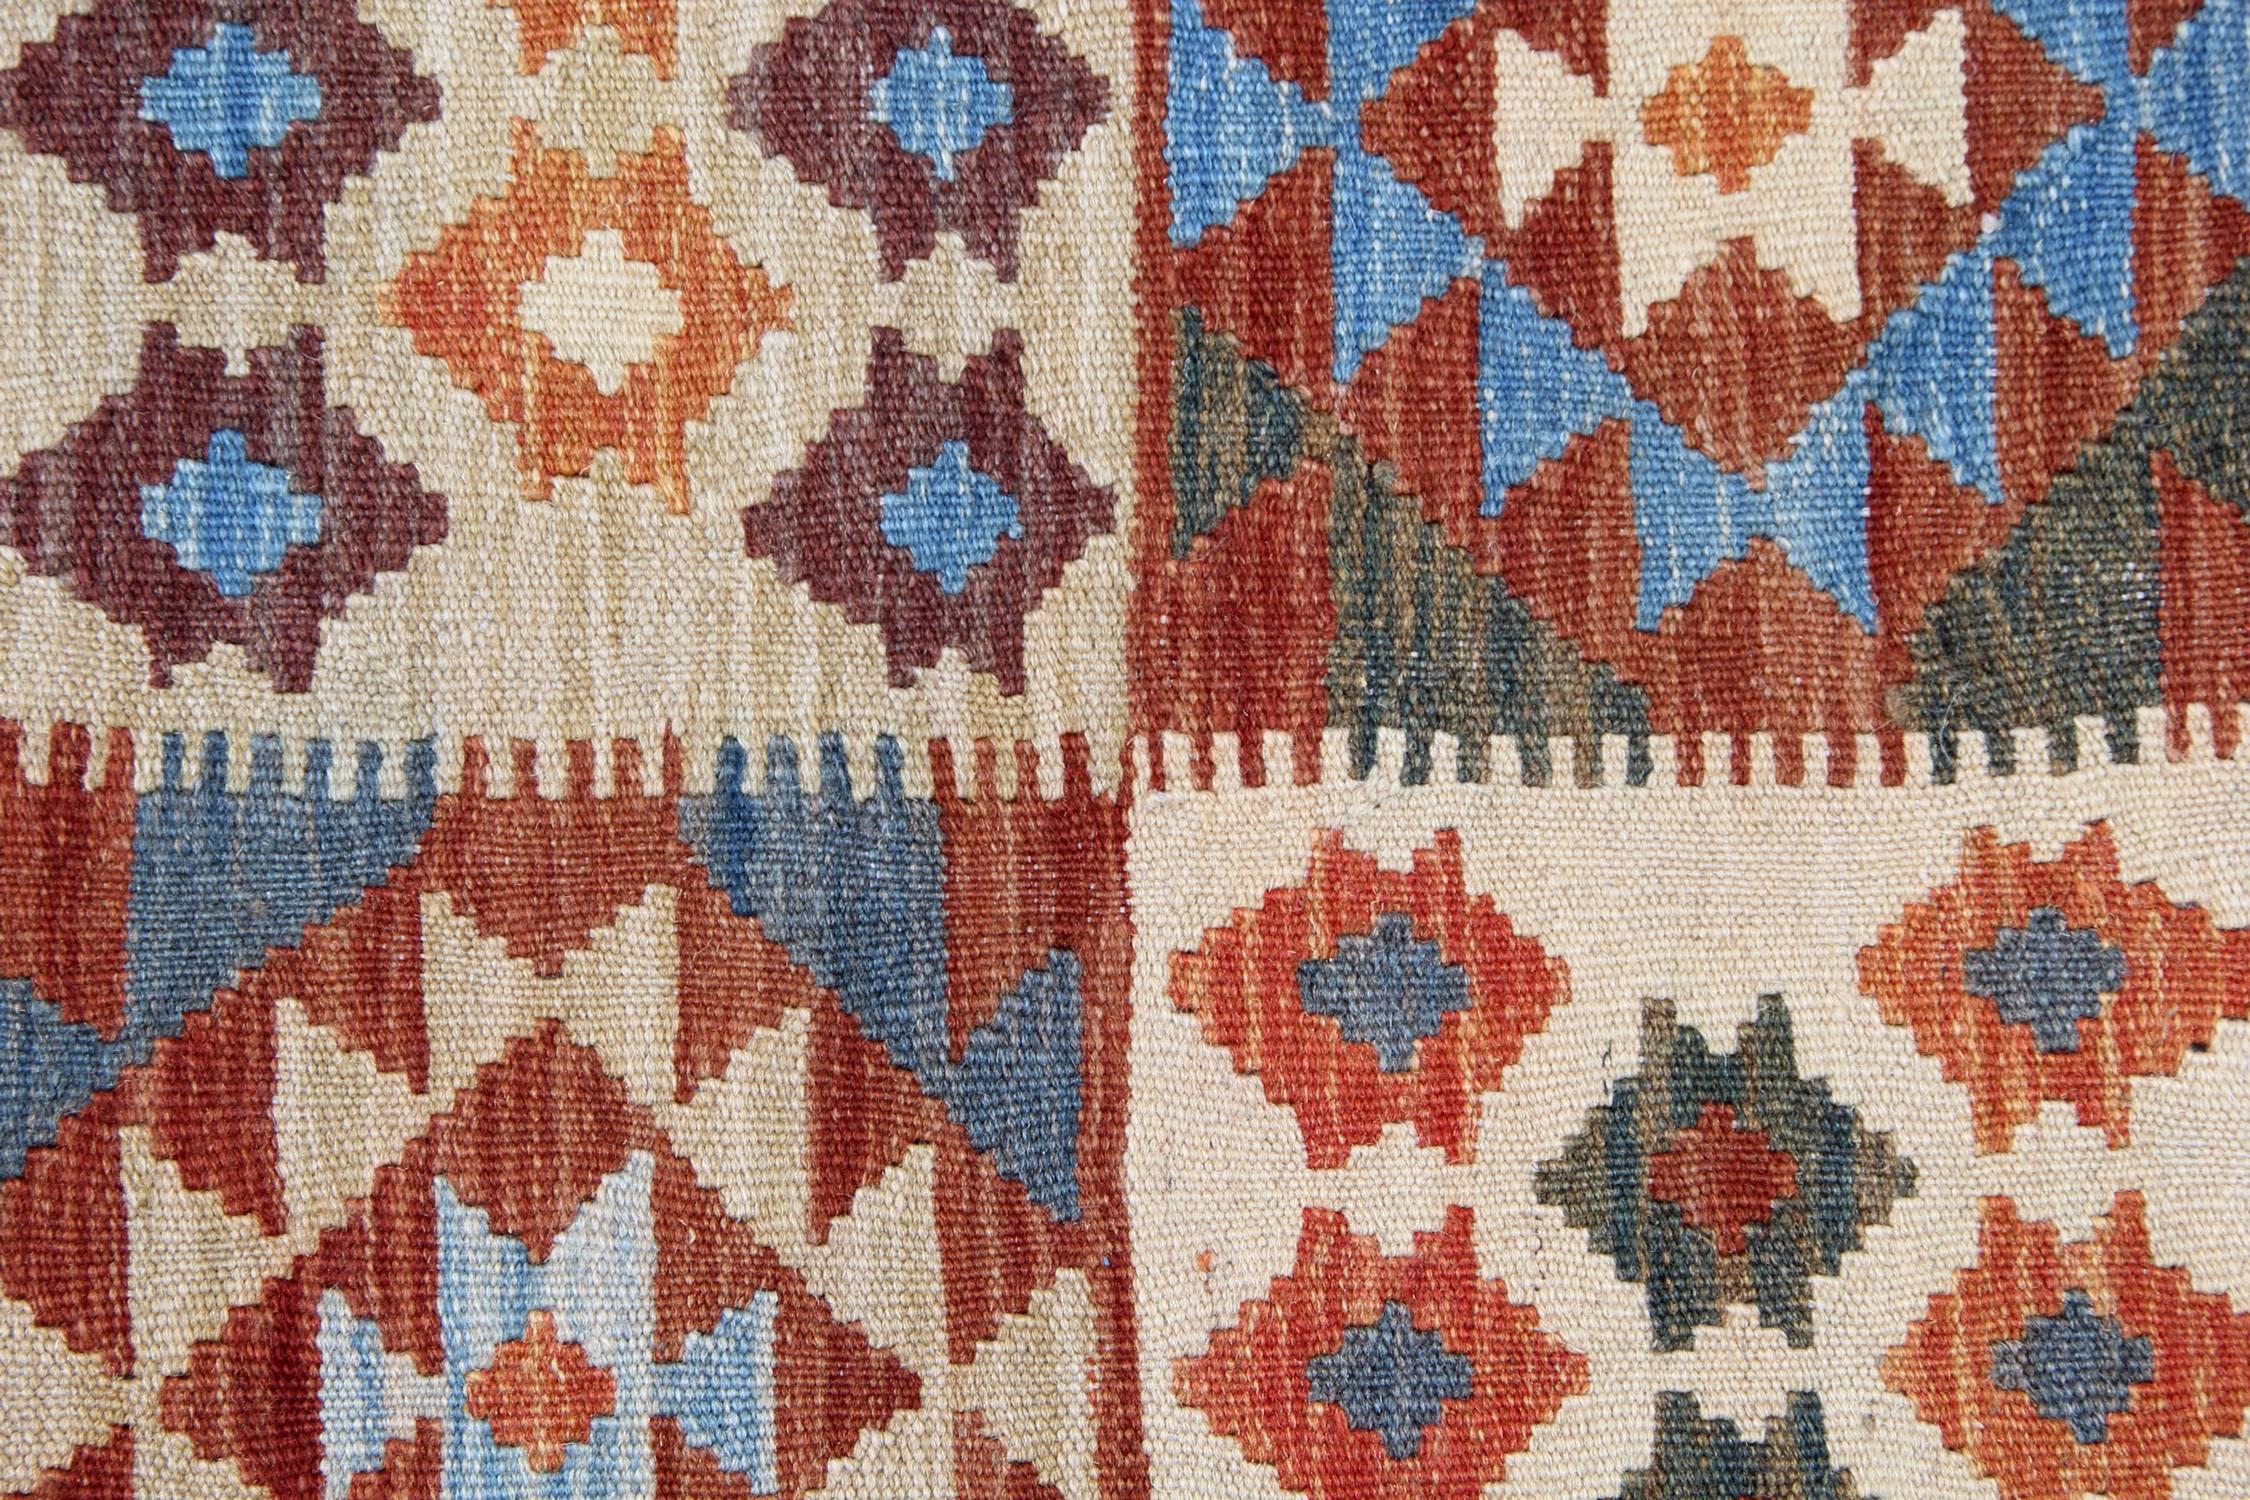 Vegetable Dyed Afghan Kilim Rugs, Tribal rug, geometric rug from Afghanistan